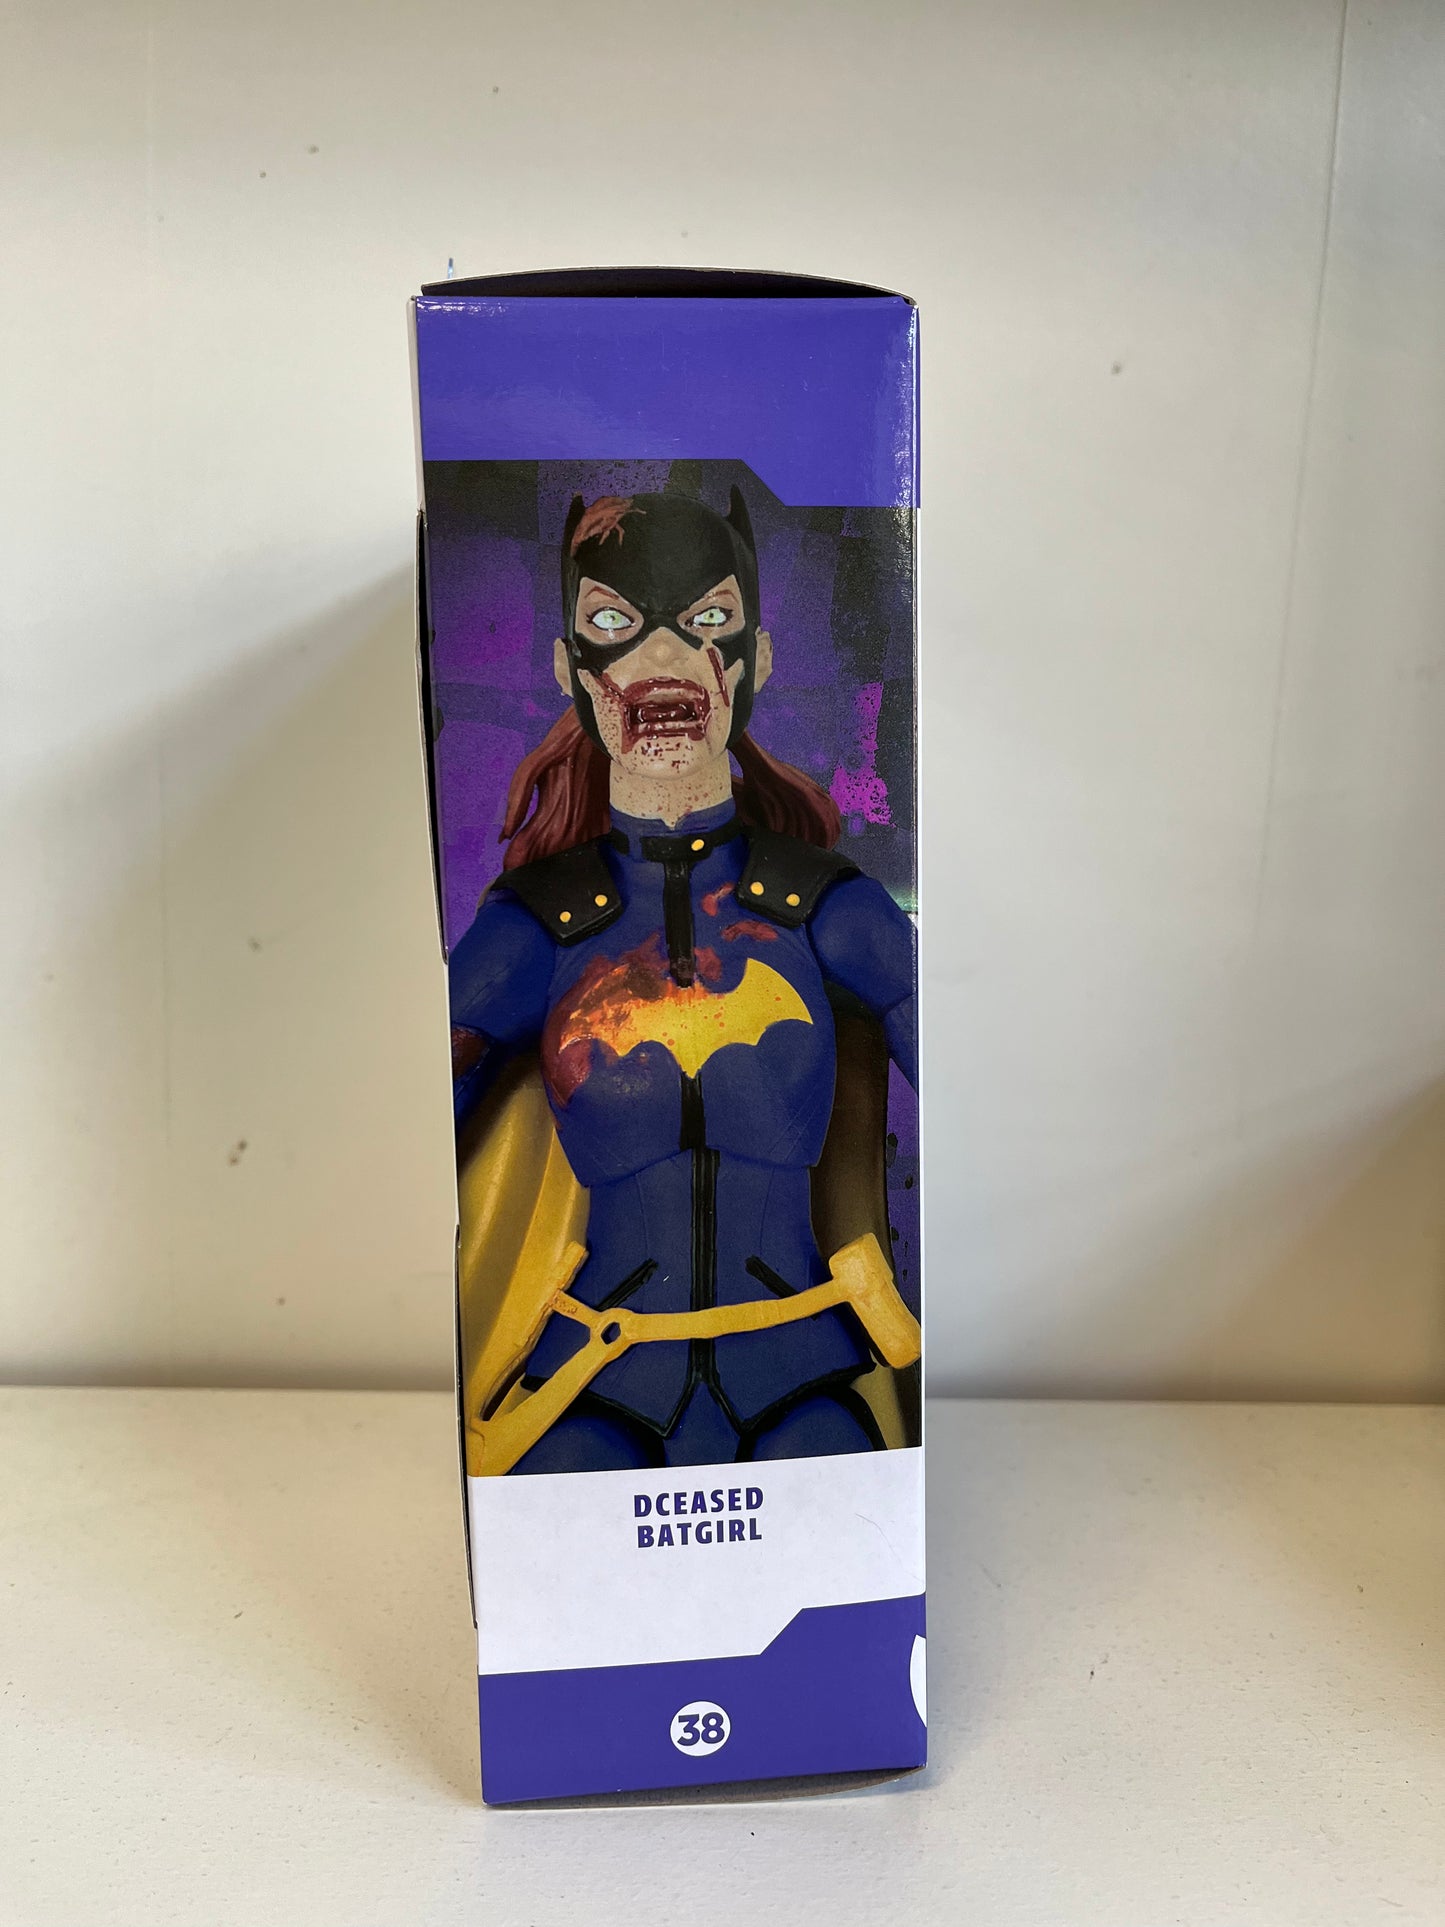 DC Essentials Dceased Batgirl DC Comics Action Figure Toy